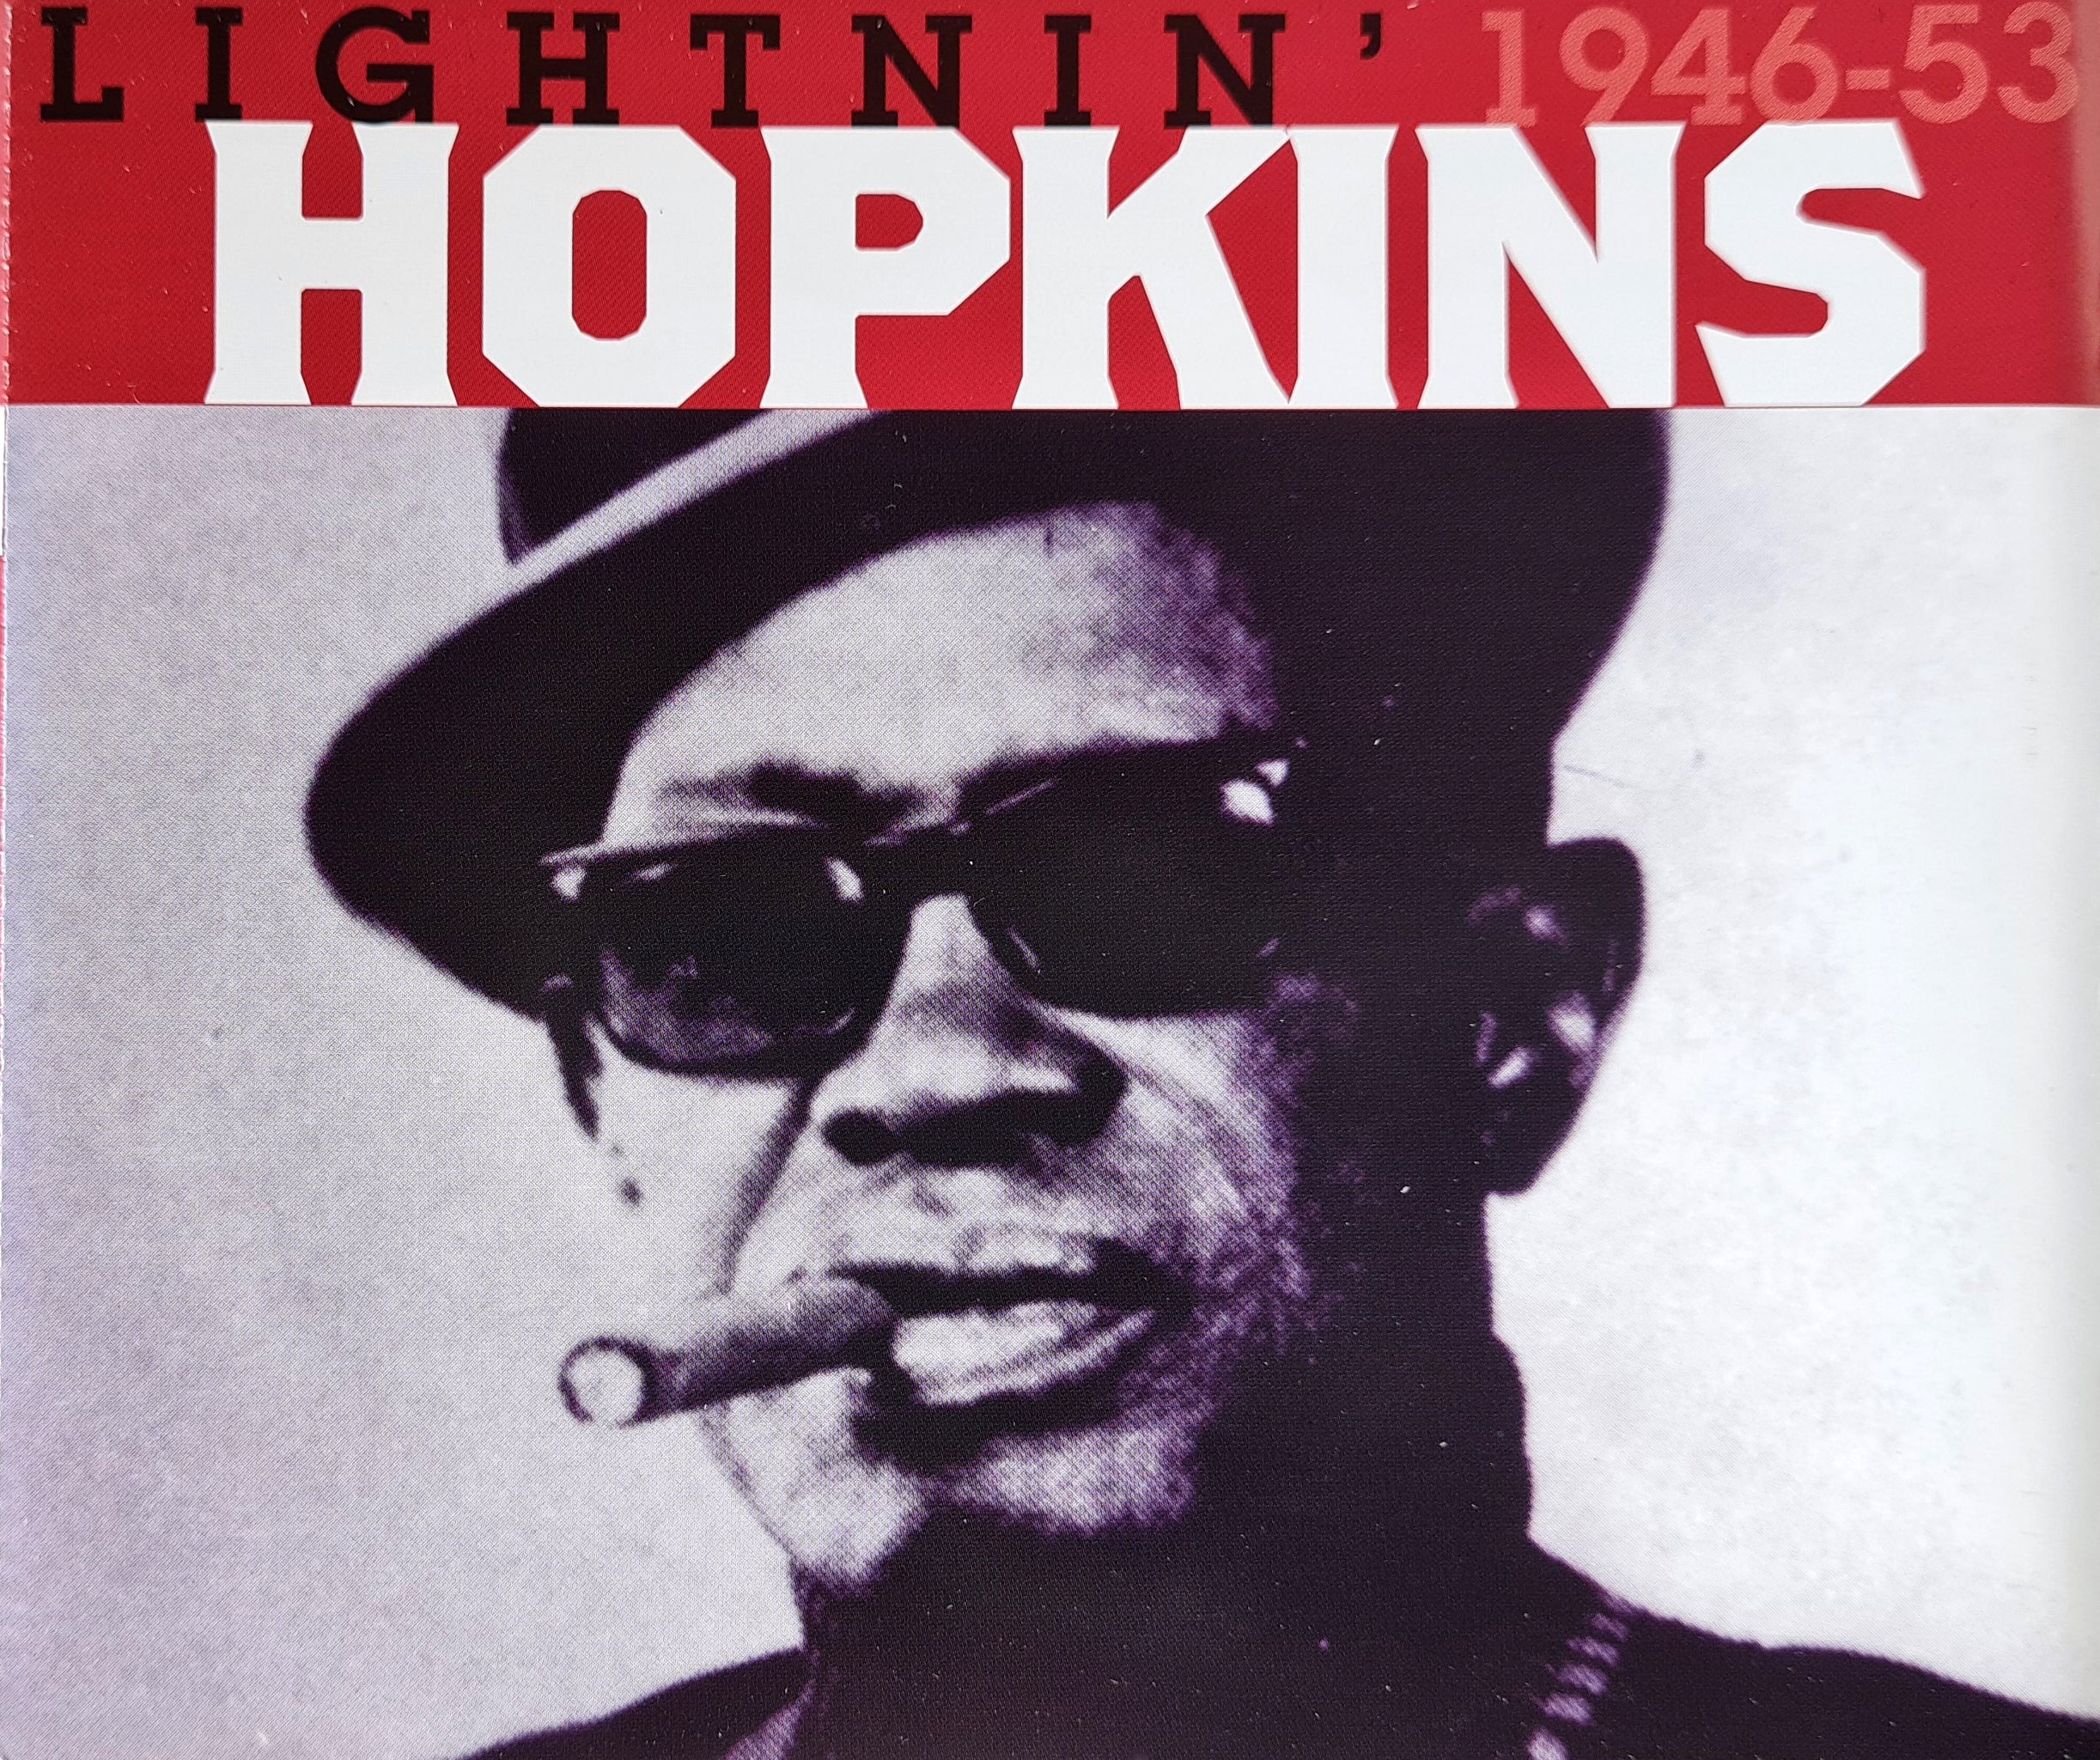 Lightnin' Hopkins - 1946-53 (CD)